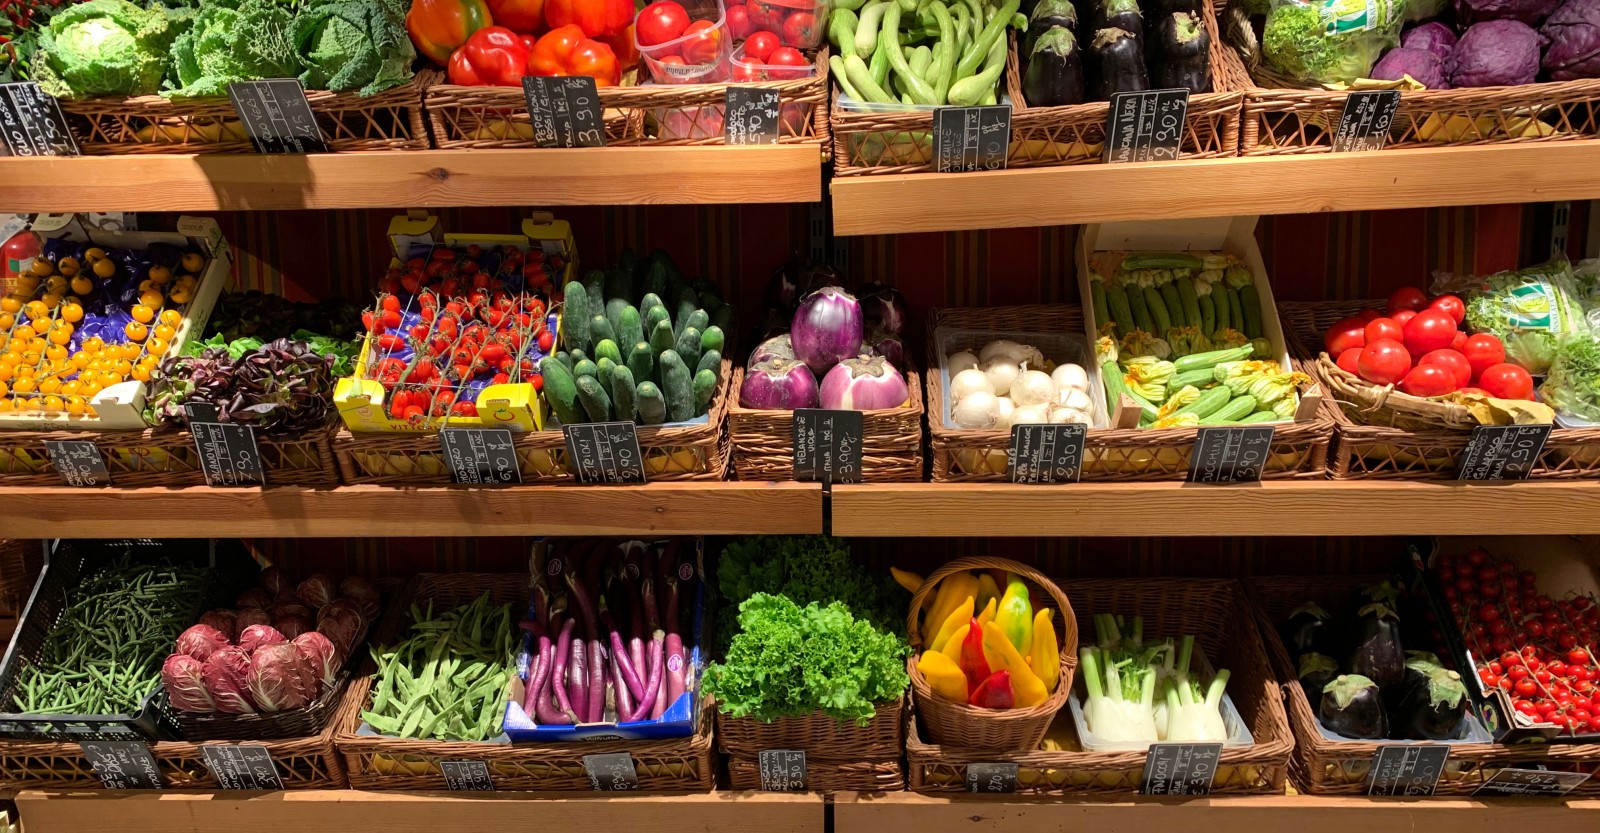 Shelves of vegetables